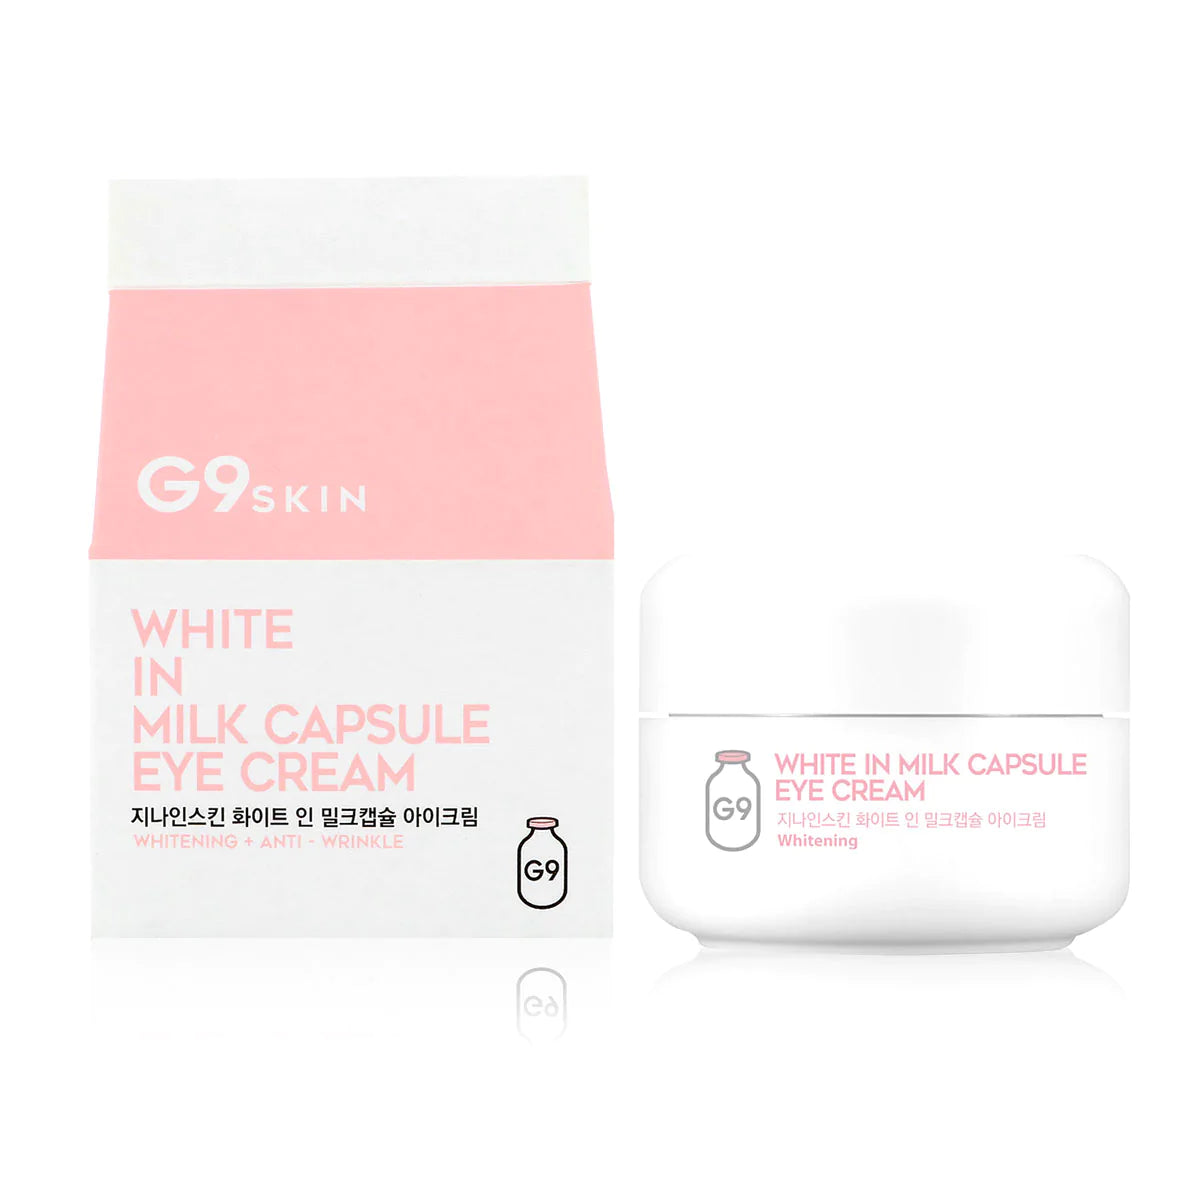 G9SKIN - White In Milk Capsule Eye Cream